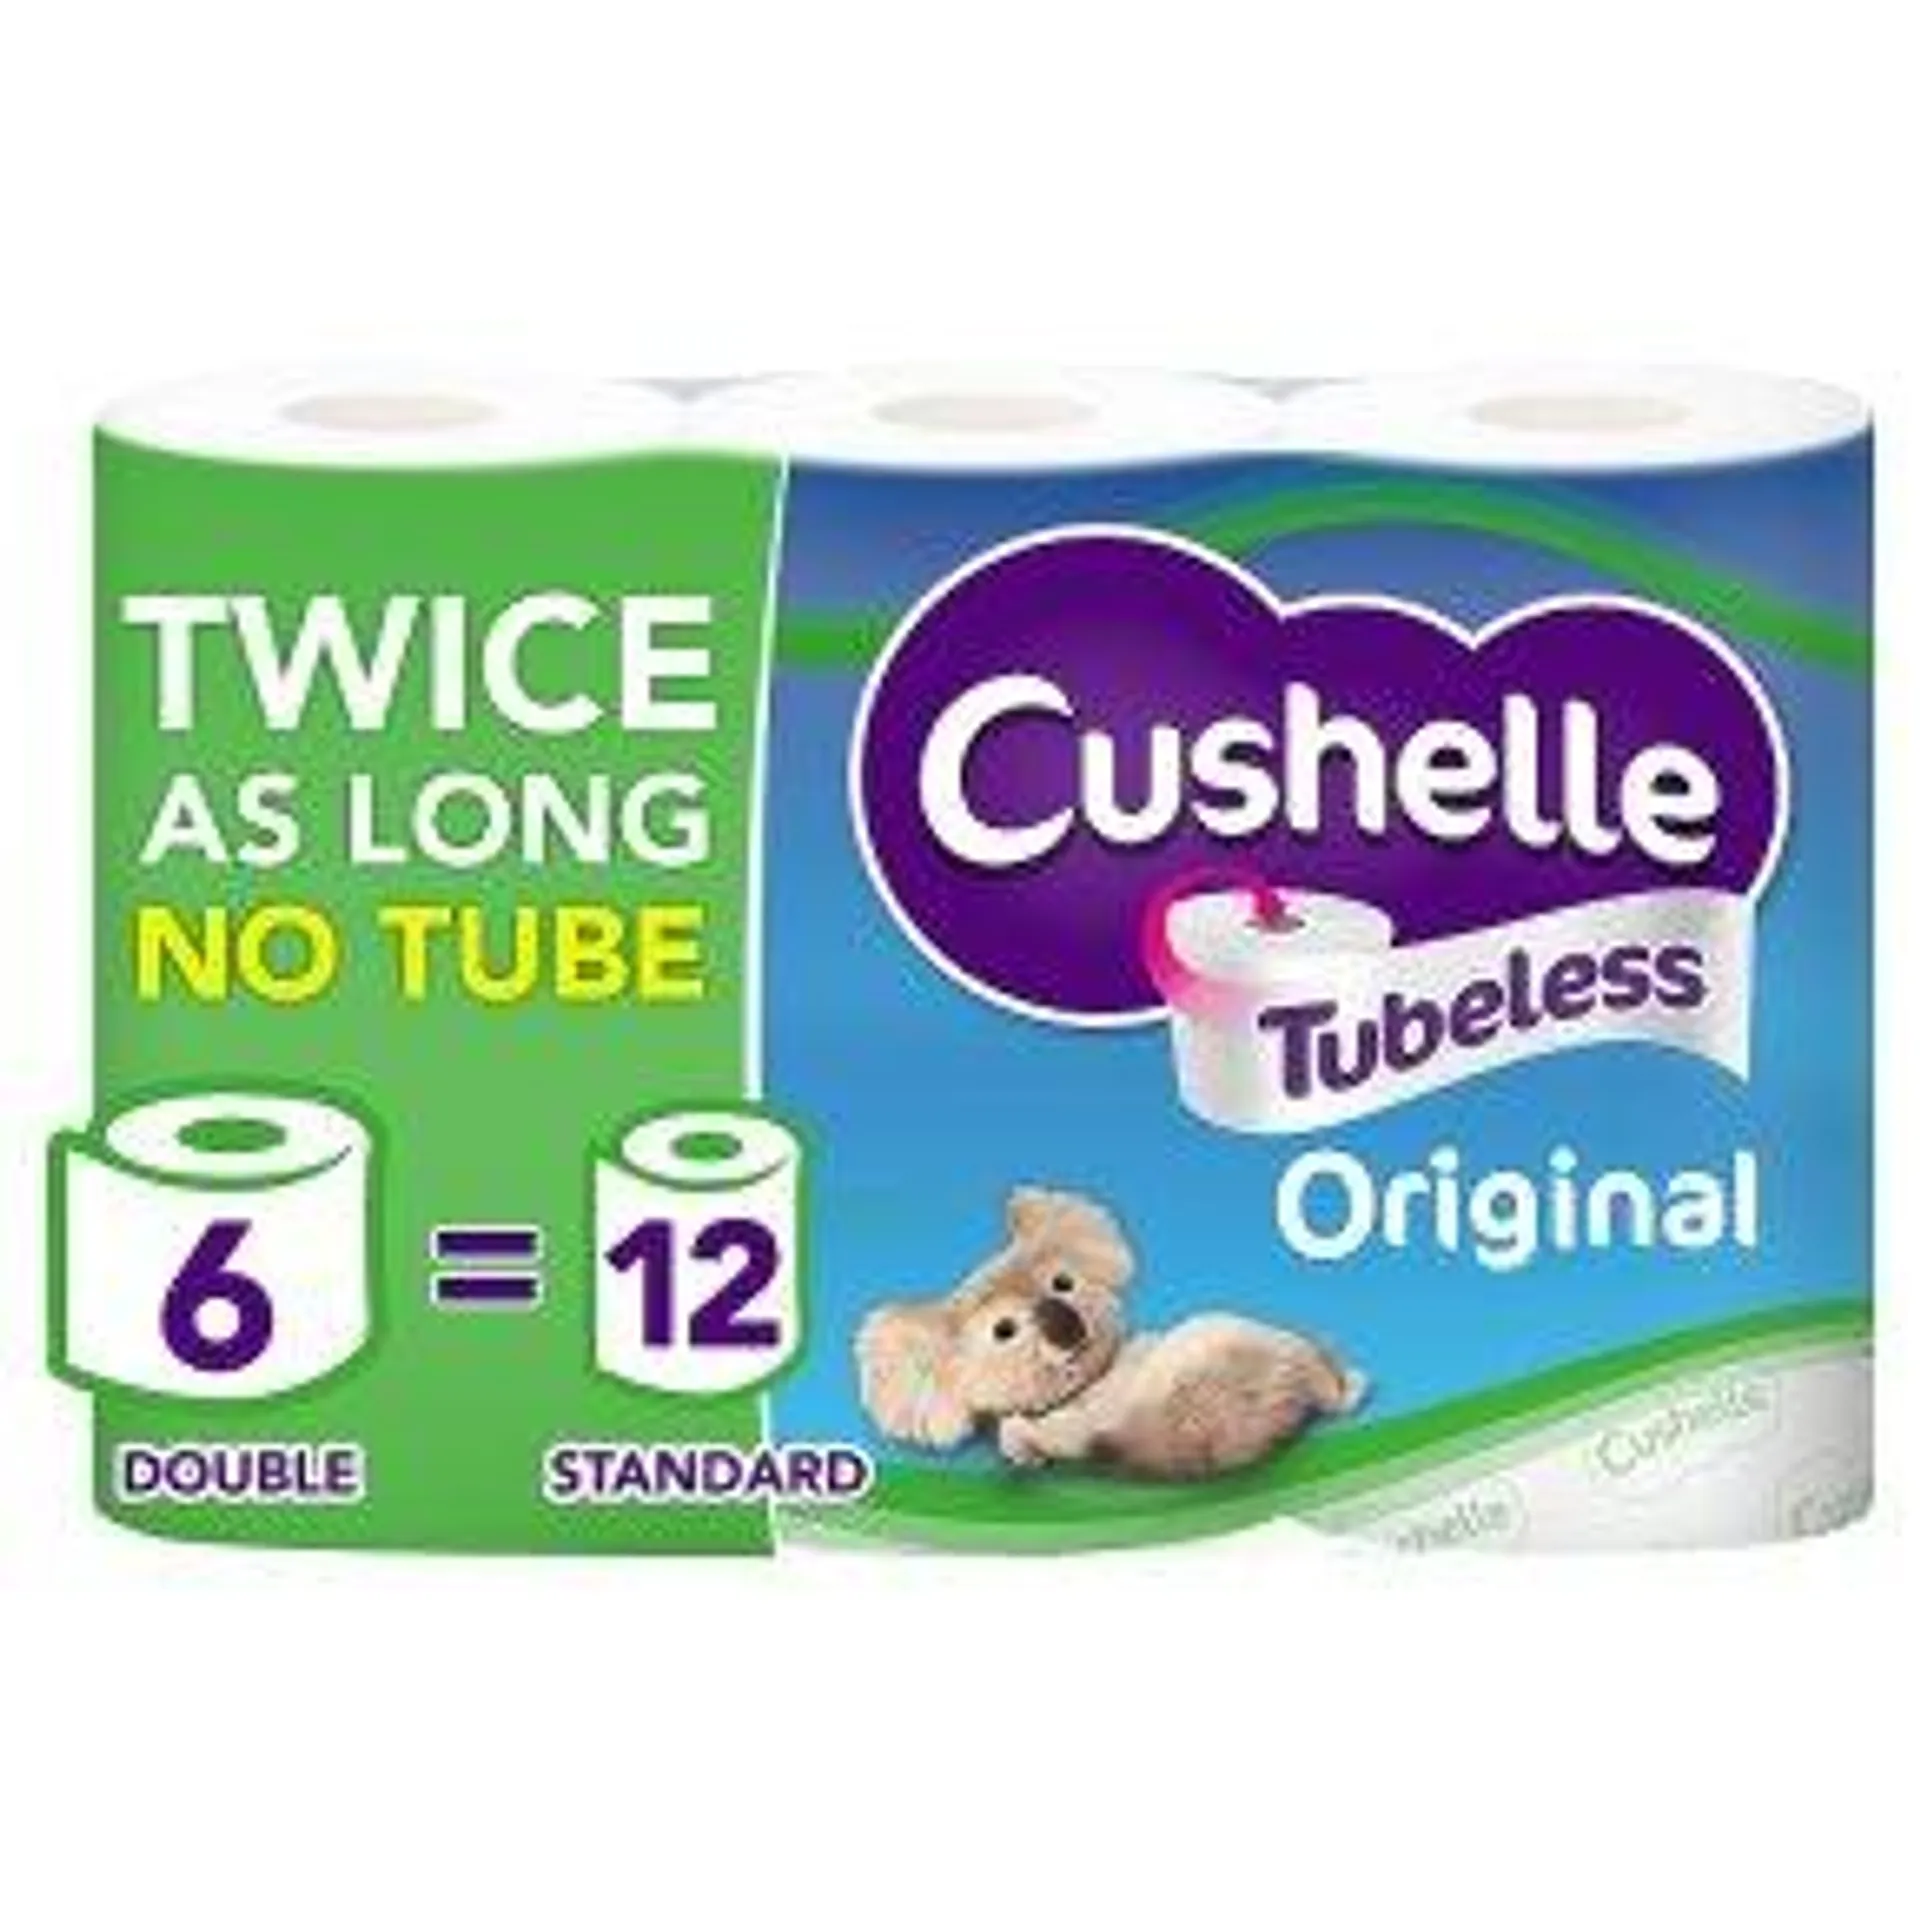 Cushelle Original Tubeless Double Roll Toilet Tissue